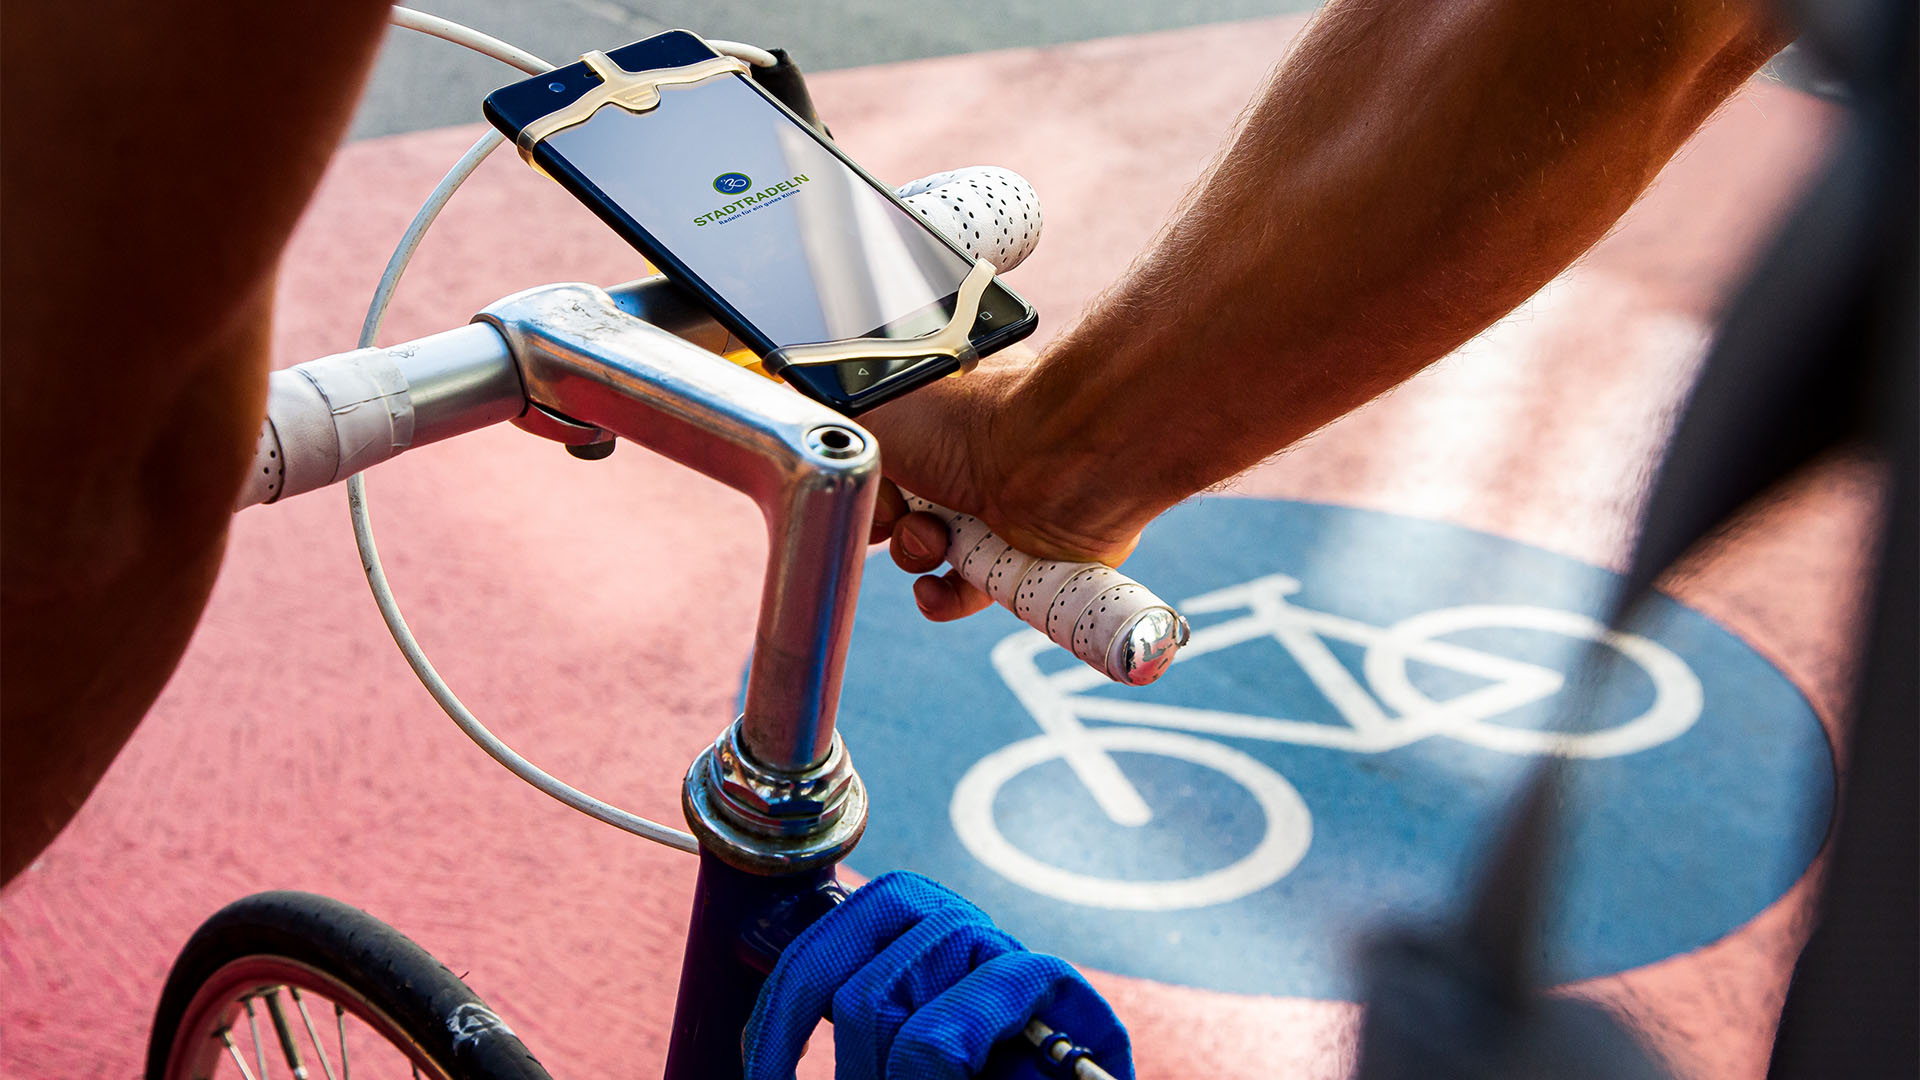 Sicht auf einen Fahrradlenker an dem ein Handy angebracht ist. Im Hintergrund ist auf dem Boden das Verkehrszeichen für Radweg aufgebracht.